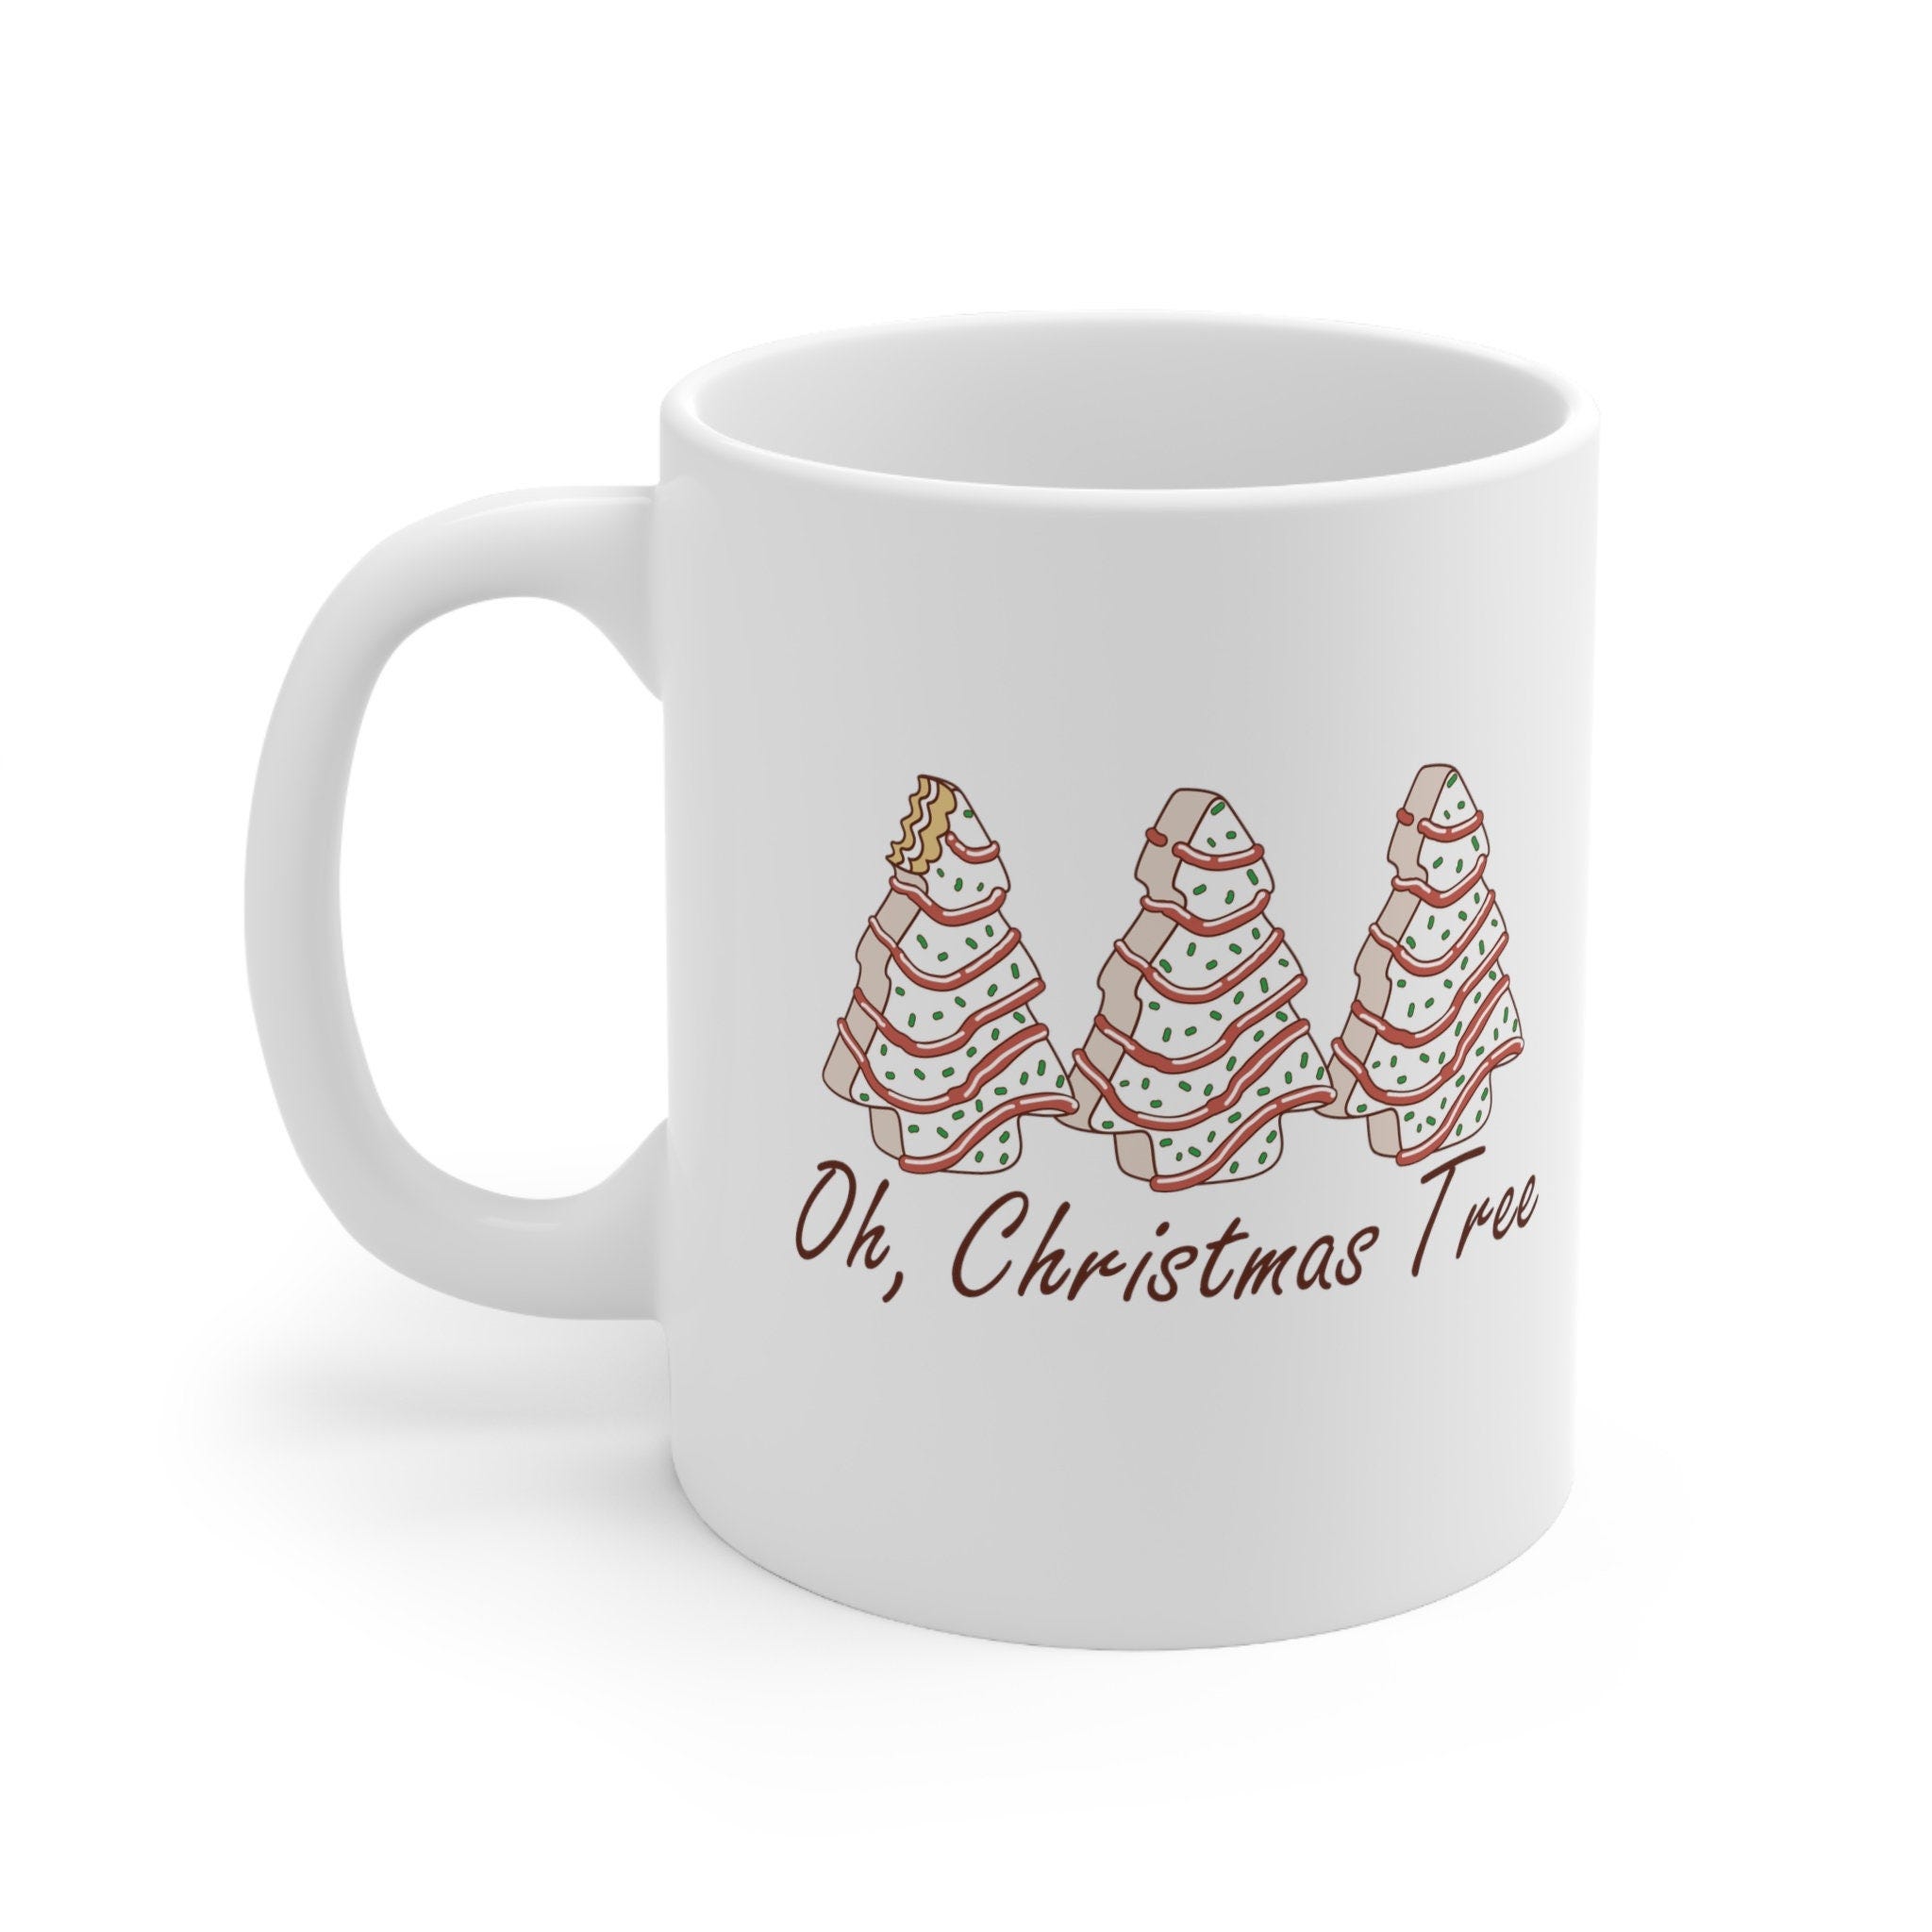 Oh Christmas Tree  Mug - 11 oz